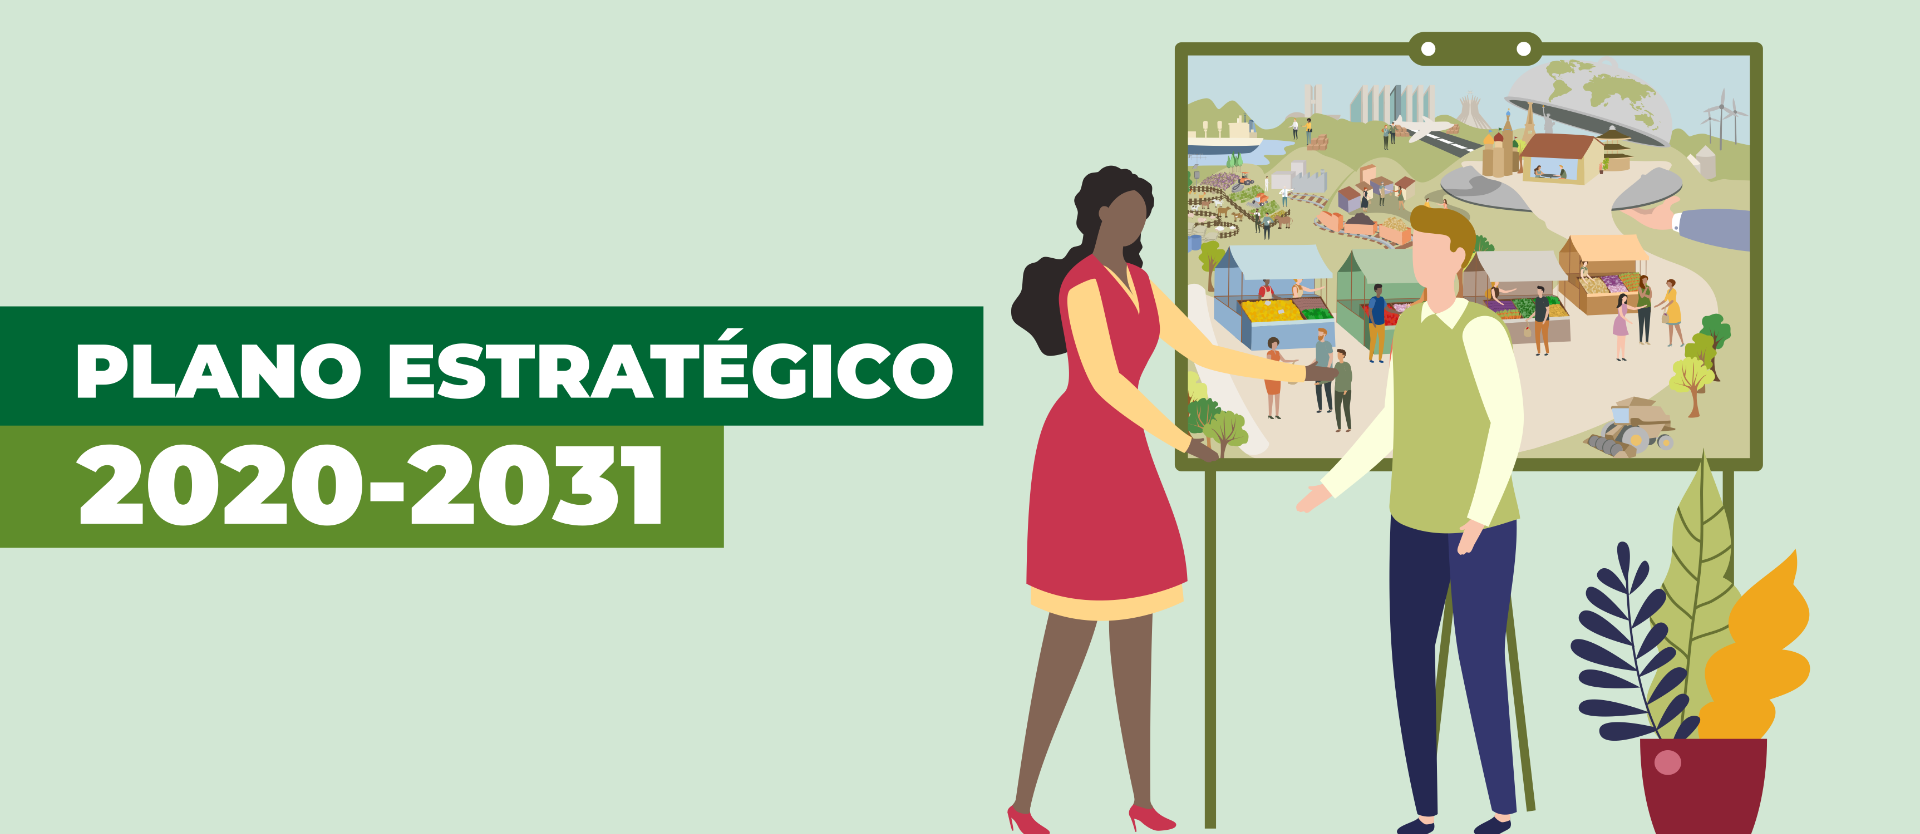 Banner - Plano Estratégico 2020-2031 v2.png